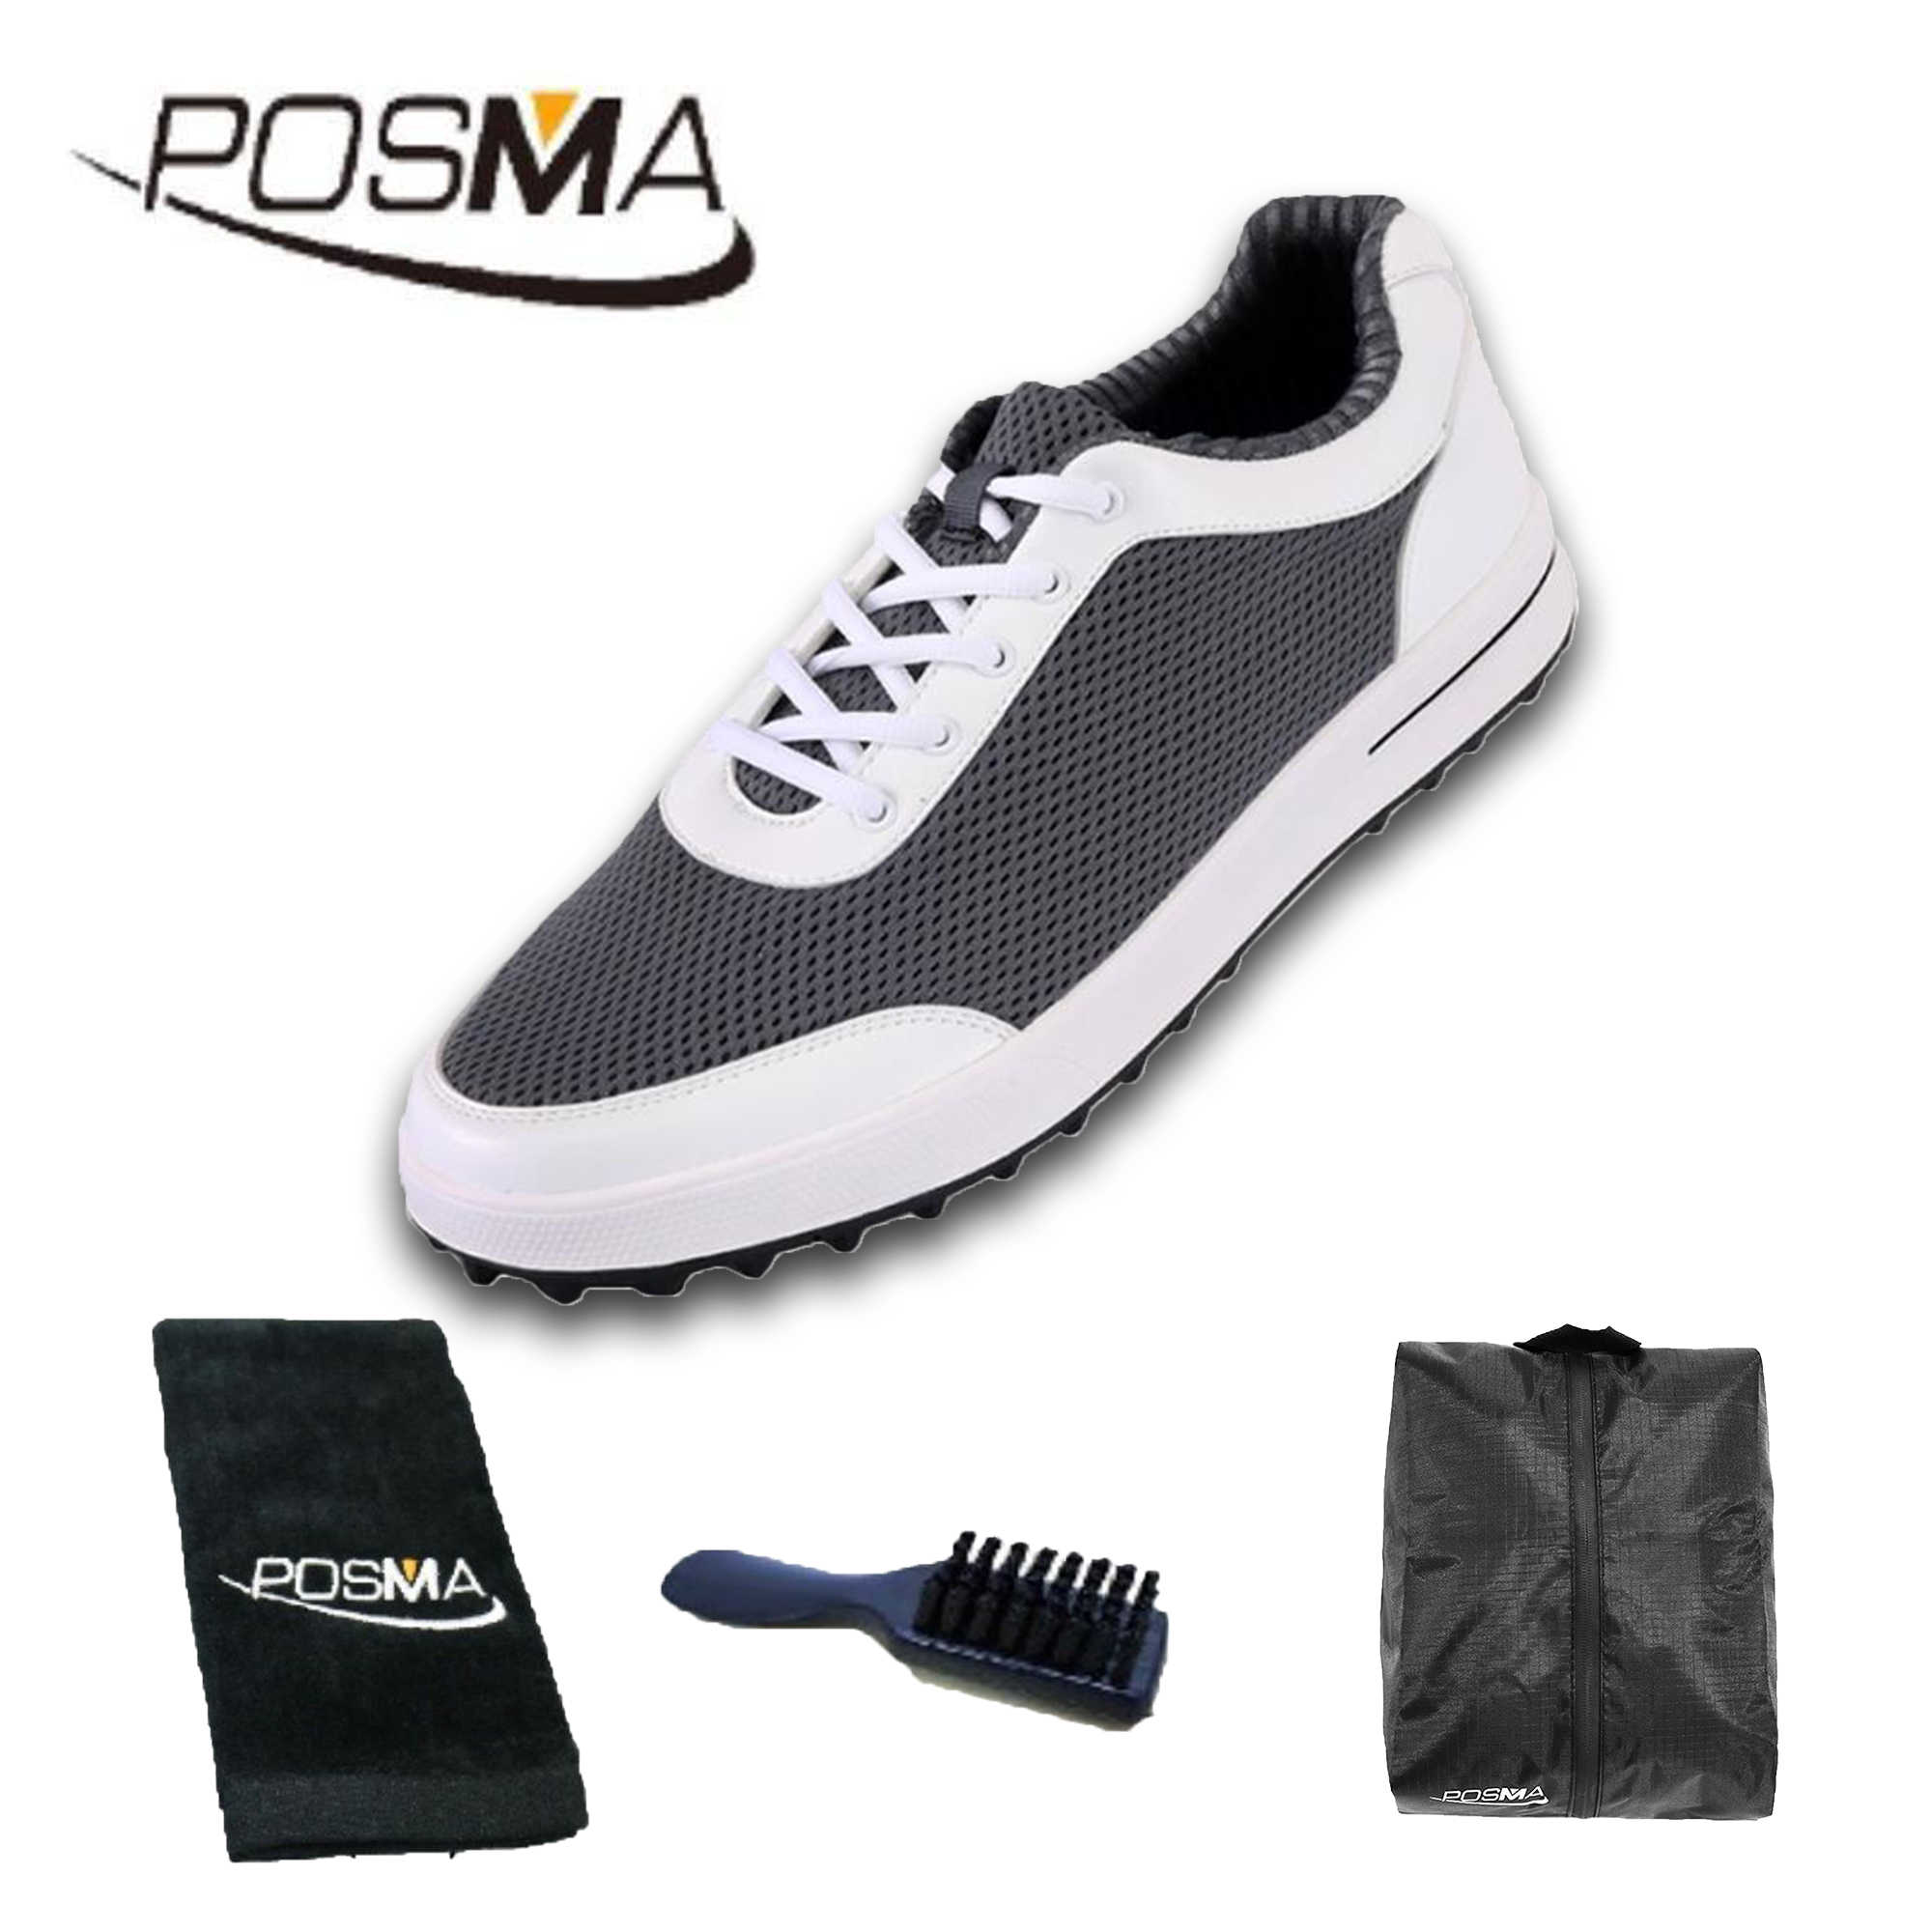 高爾夫男士球鞋 夏季網布球鞋 輕便 透氣舒適   GSH079 灰 配POSMA鞋包 2合1清潔刷   高爾夫球毛巾